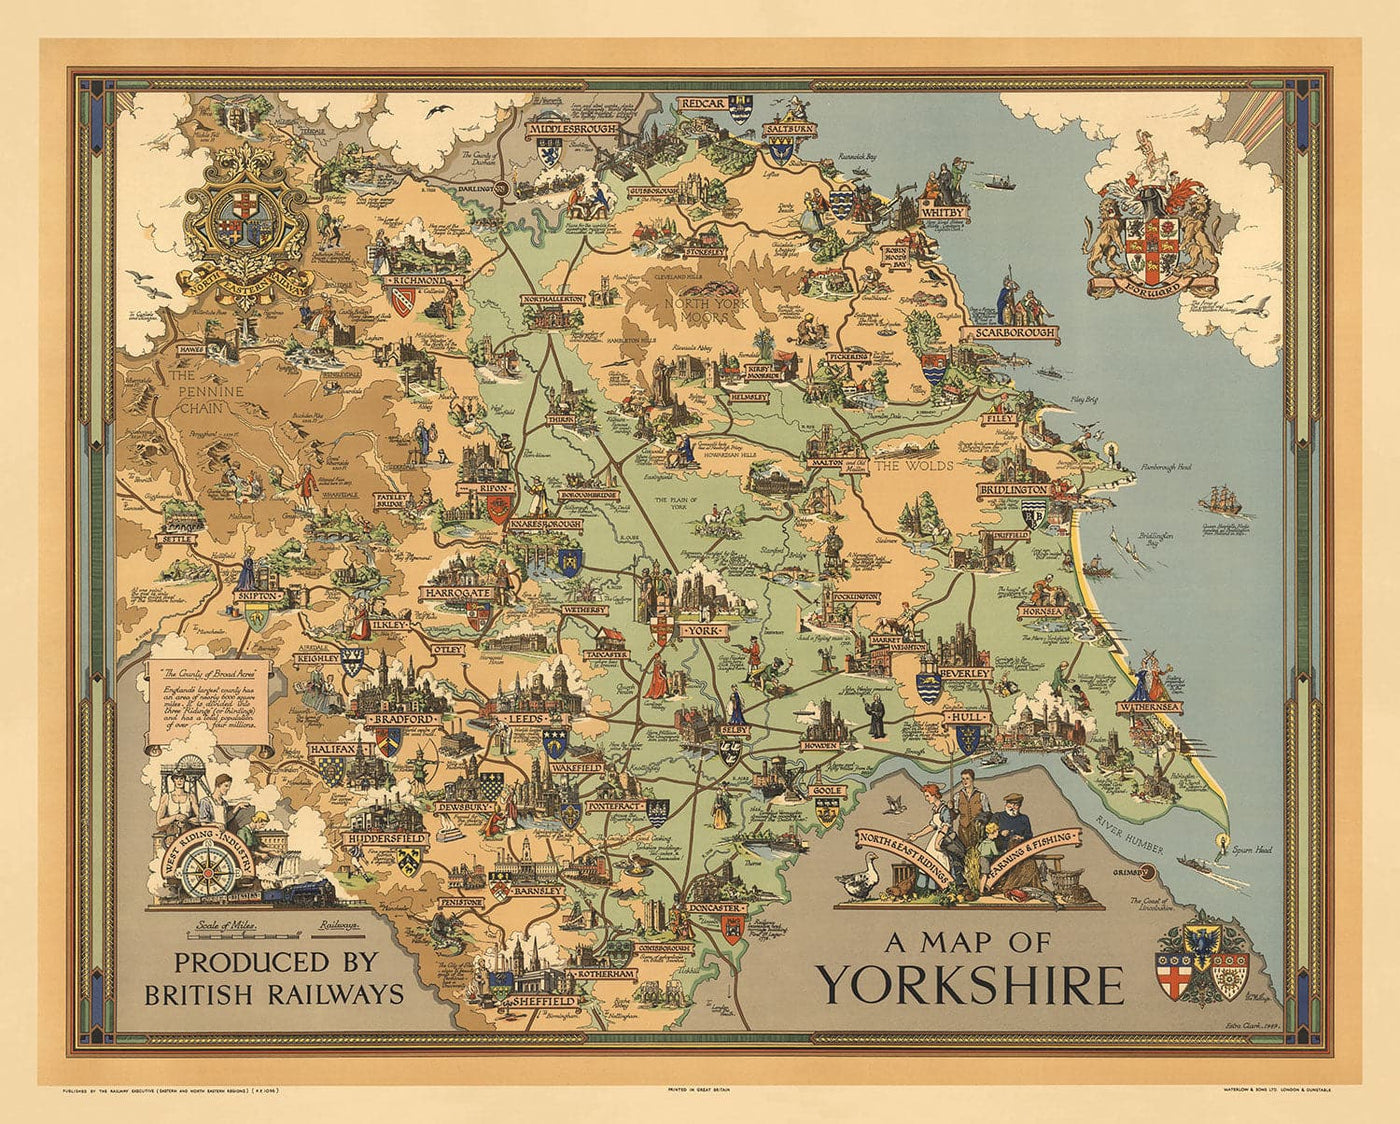 Alte Karte von Yorkshire, 1949 - Britische Eisenbahn-Bildekarte - York, Sheffield, Bradford, Leeds, Middlesbrough, Pennines